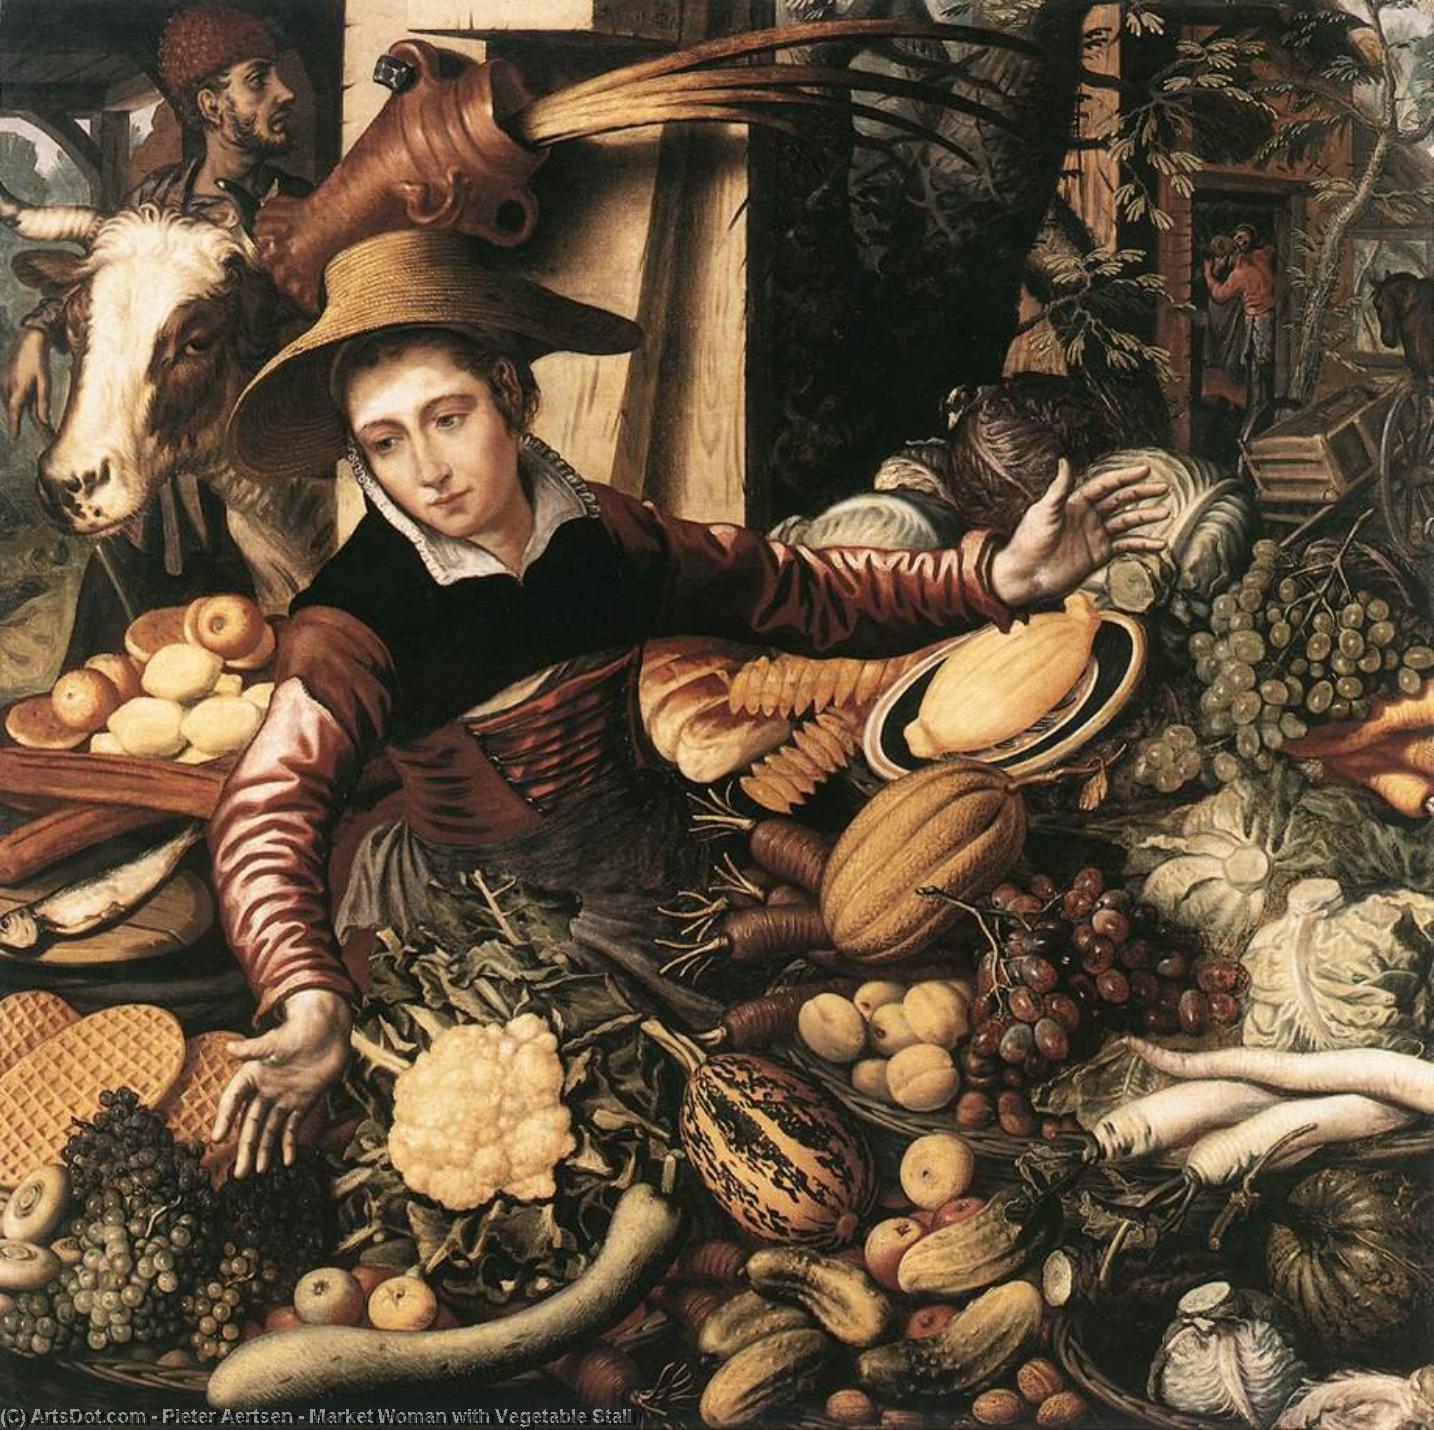 WikiOO.org - אנציקלופדיה לאמנויות יפות - ציור, יצירות אמנות Pieter Aertsen - Market Woman with Vegetable Stall